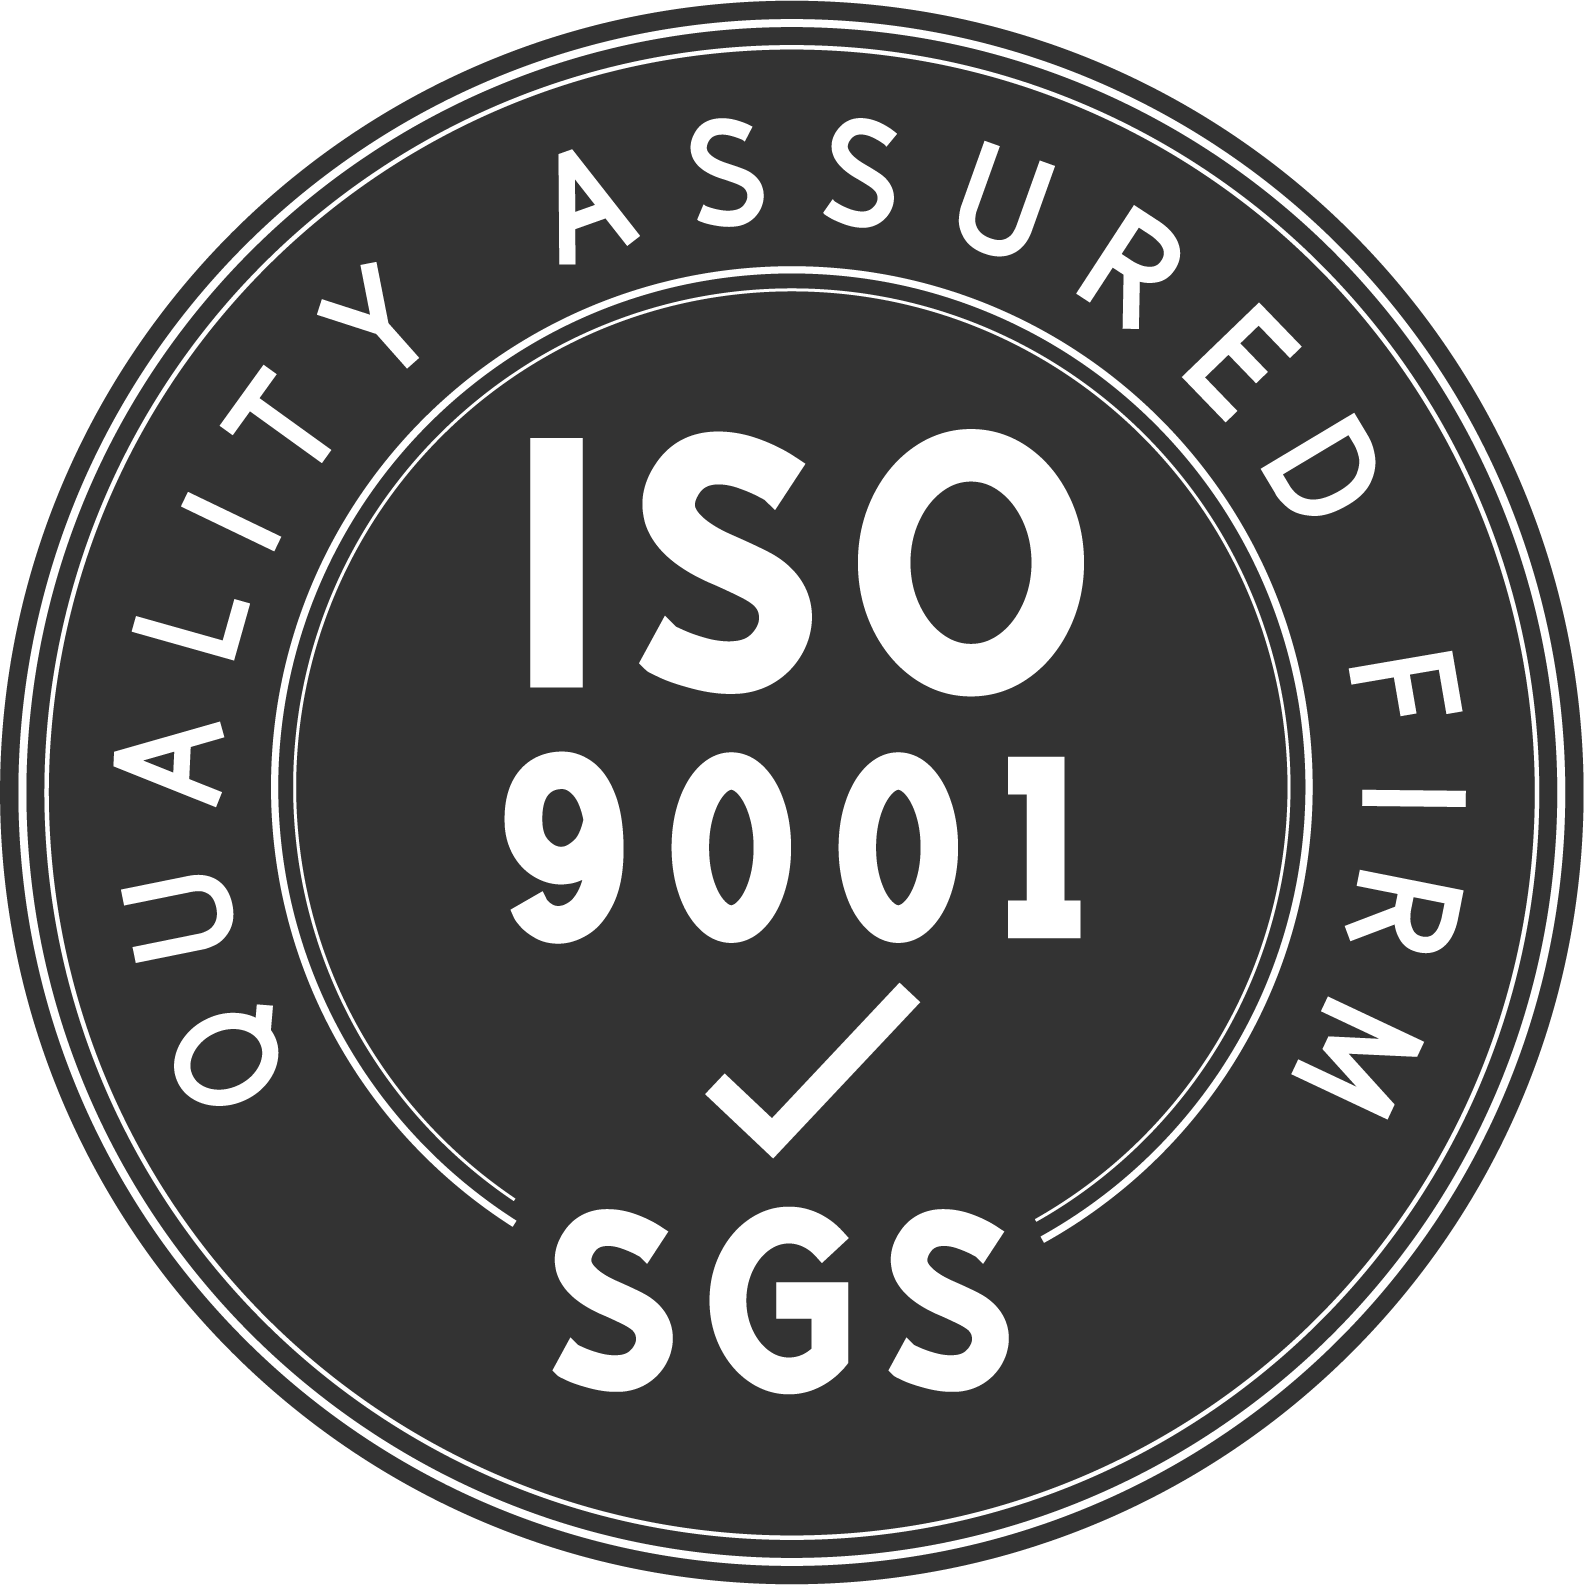 ကျွန်ုပ်တို့၏စက်ရုံသည် အရည်အသွေးမြင့်ထုတ်ကုန်များ၏ ISO9001:2005 အသိအမှတ်ပြုထုတ်လုပ်သူဖြစ်သည်။